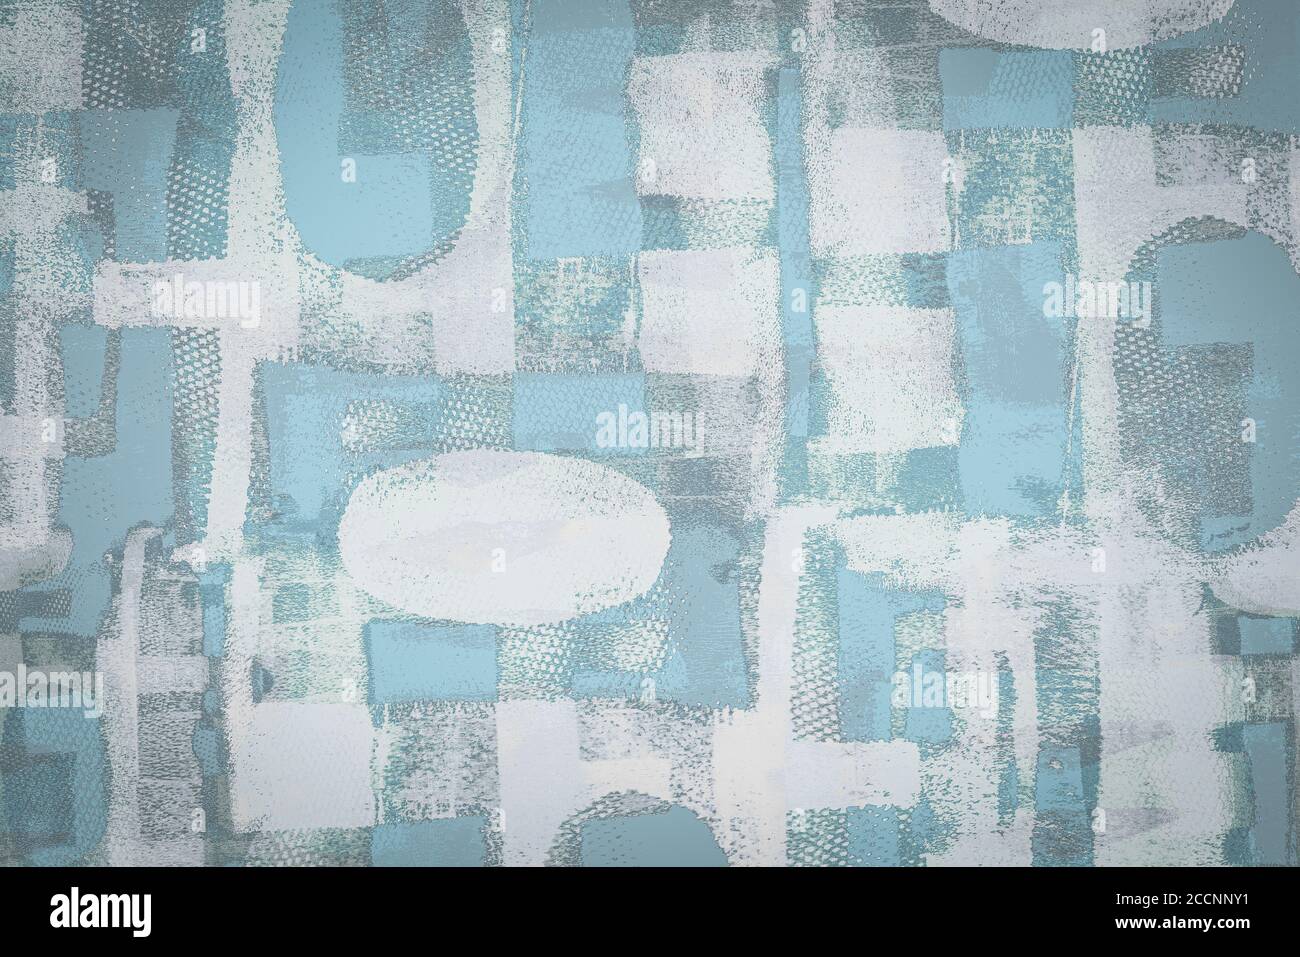 Mixed media kreativen Hintergrund von strukturierten geometrischen Formen in gemacht Blau-graue Töne Stockfoto